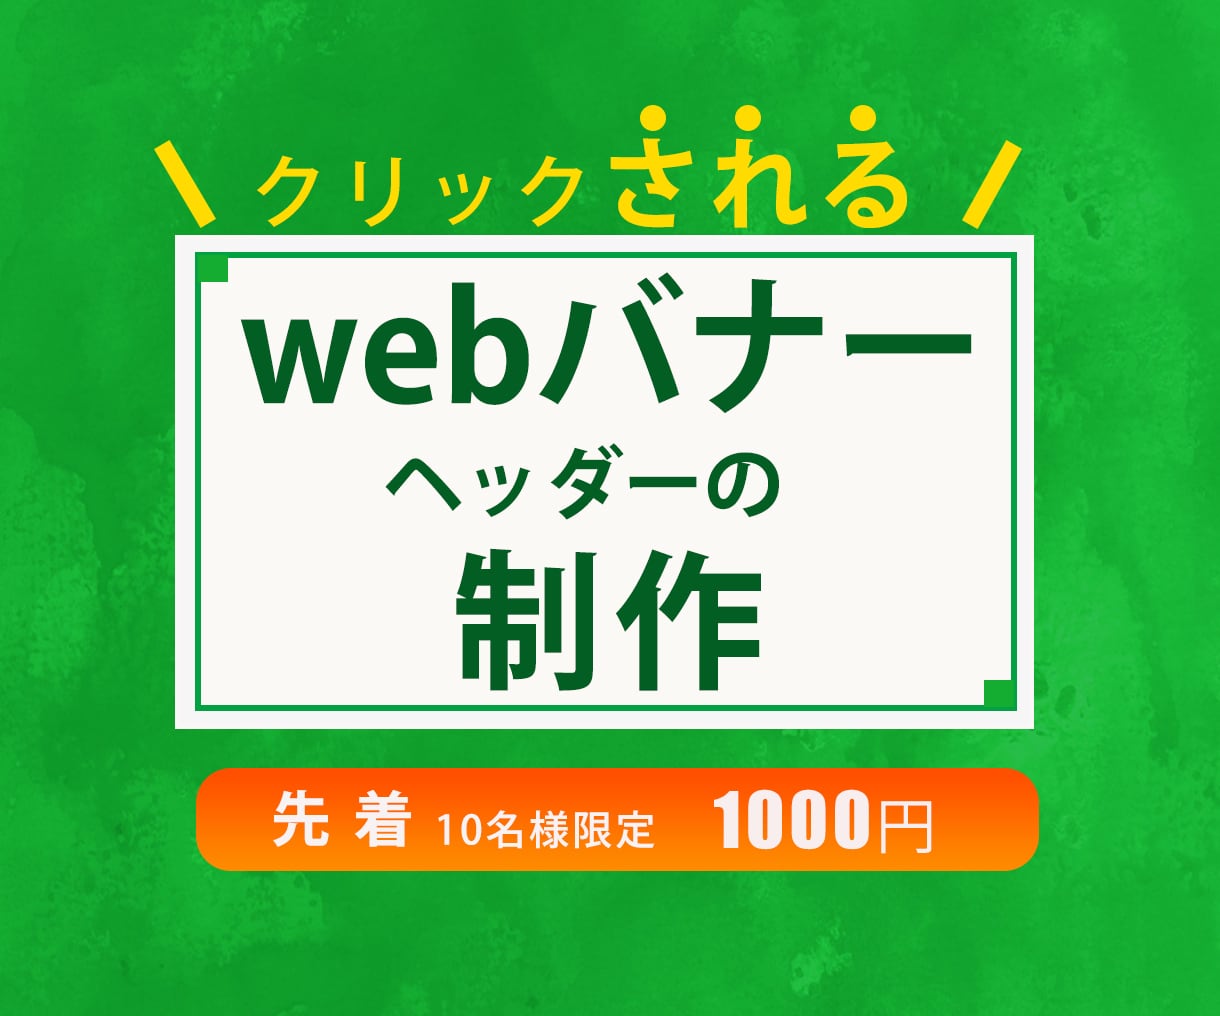 WEBバナー・ヘッダー のデザインします パッと目を引くバナー格安1000円でデザインします イメージ1